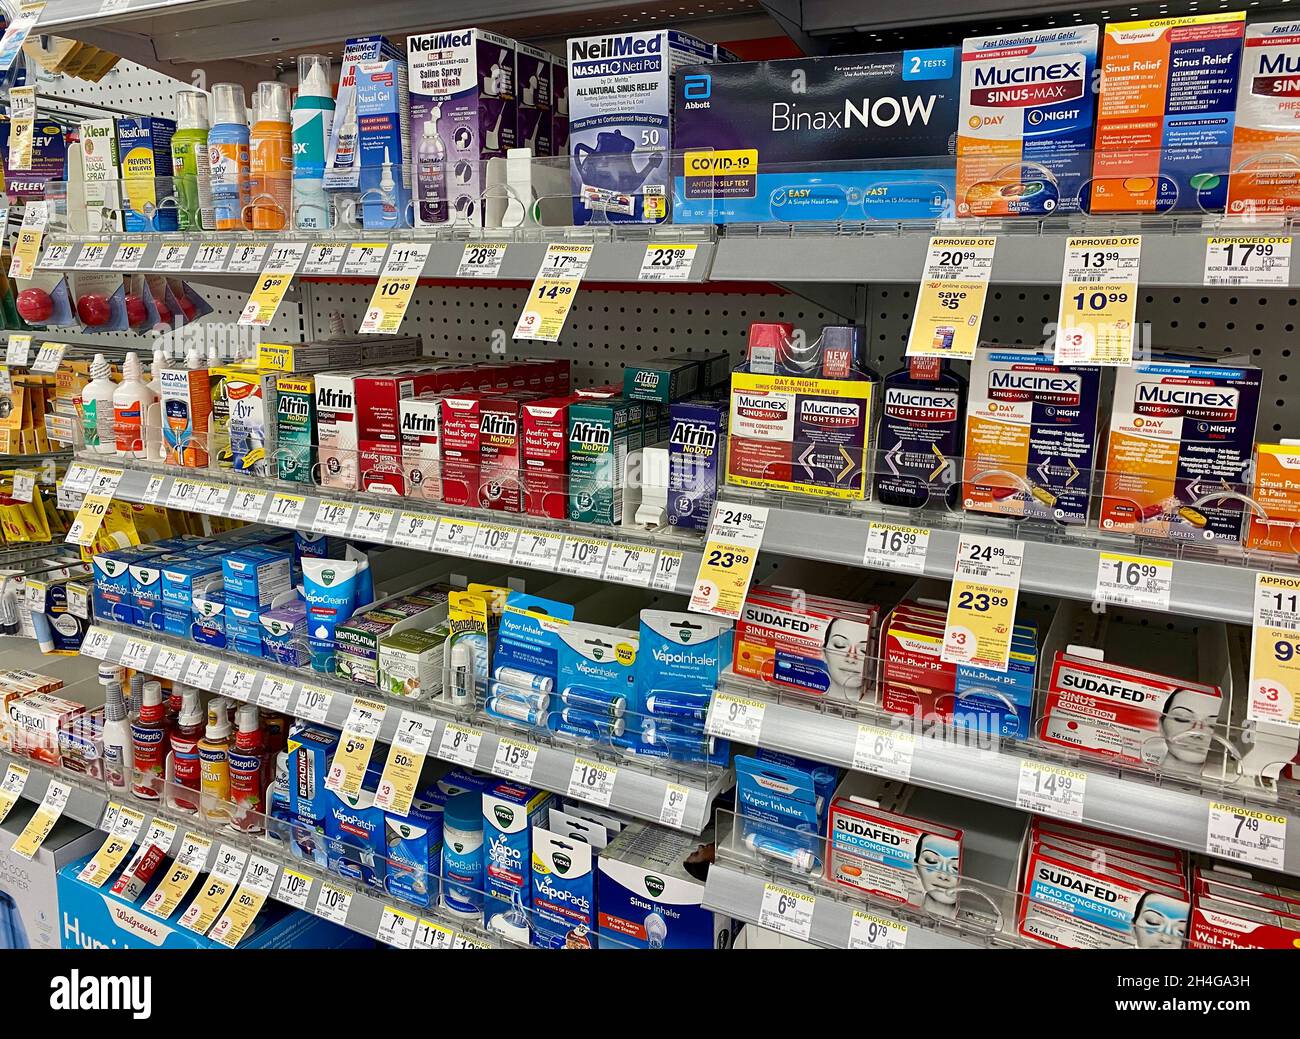 Kälte-, Nasennebenhöhlen- und Allergiemedizin im Regal der Walgreens Drogerie. Stockfoto